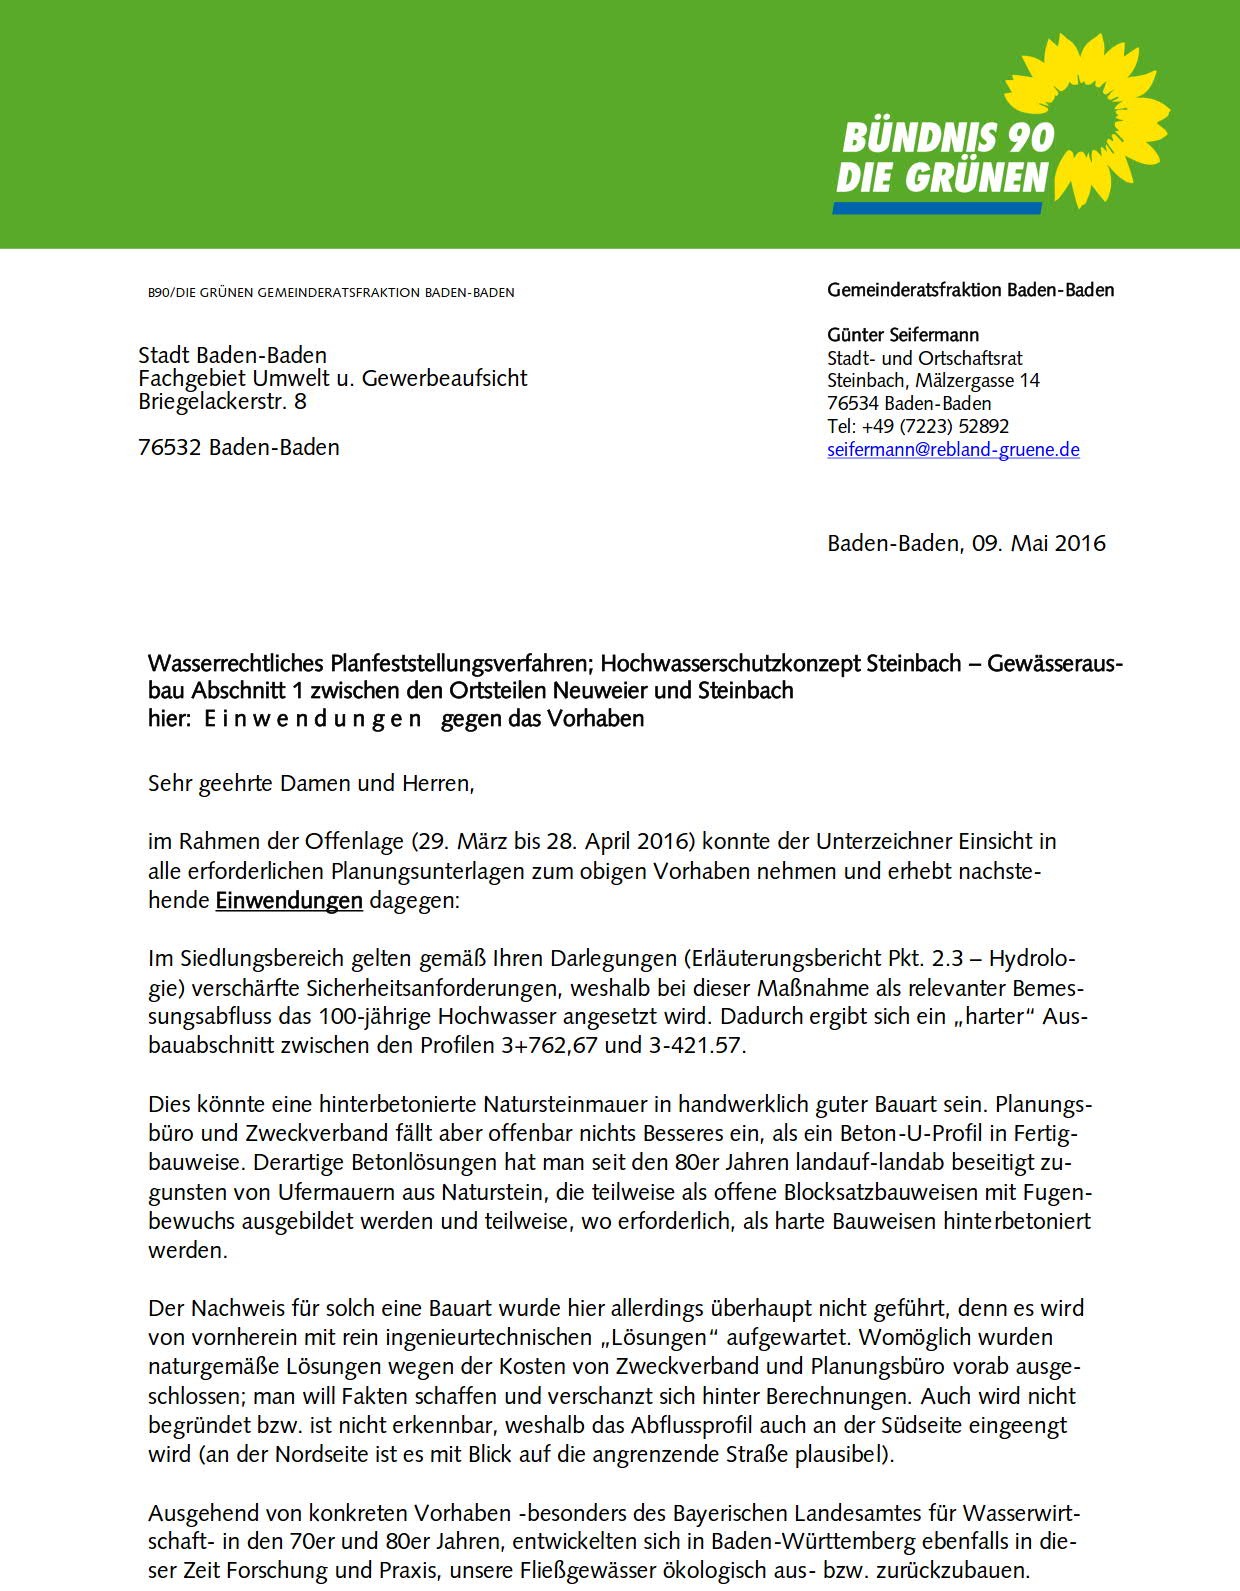 Einwendungen gegen Steinbach-Ausbau des Zweckverbandes_1